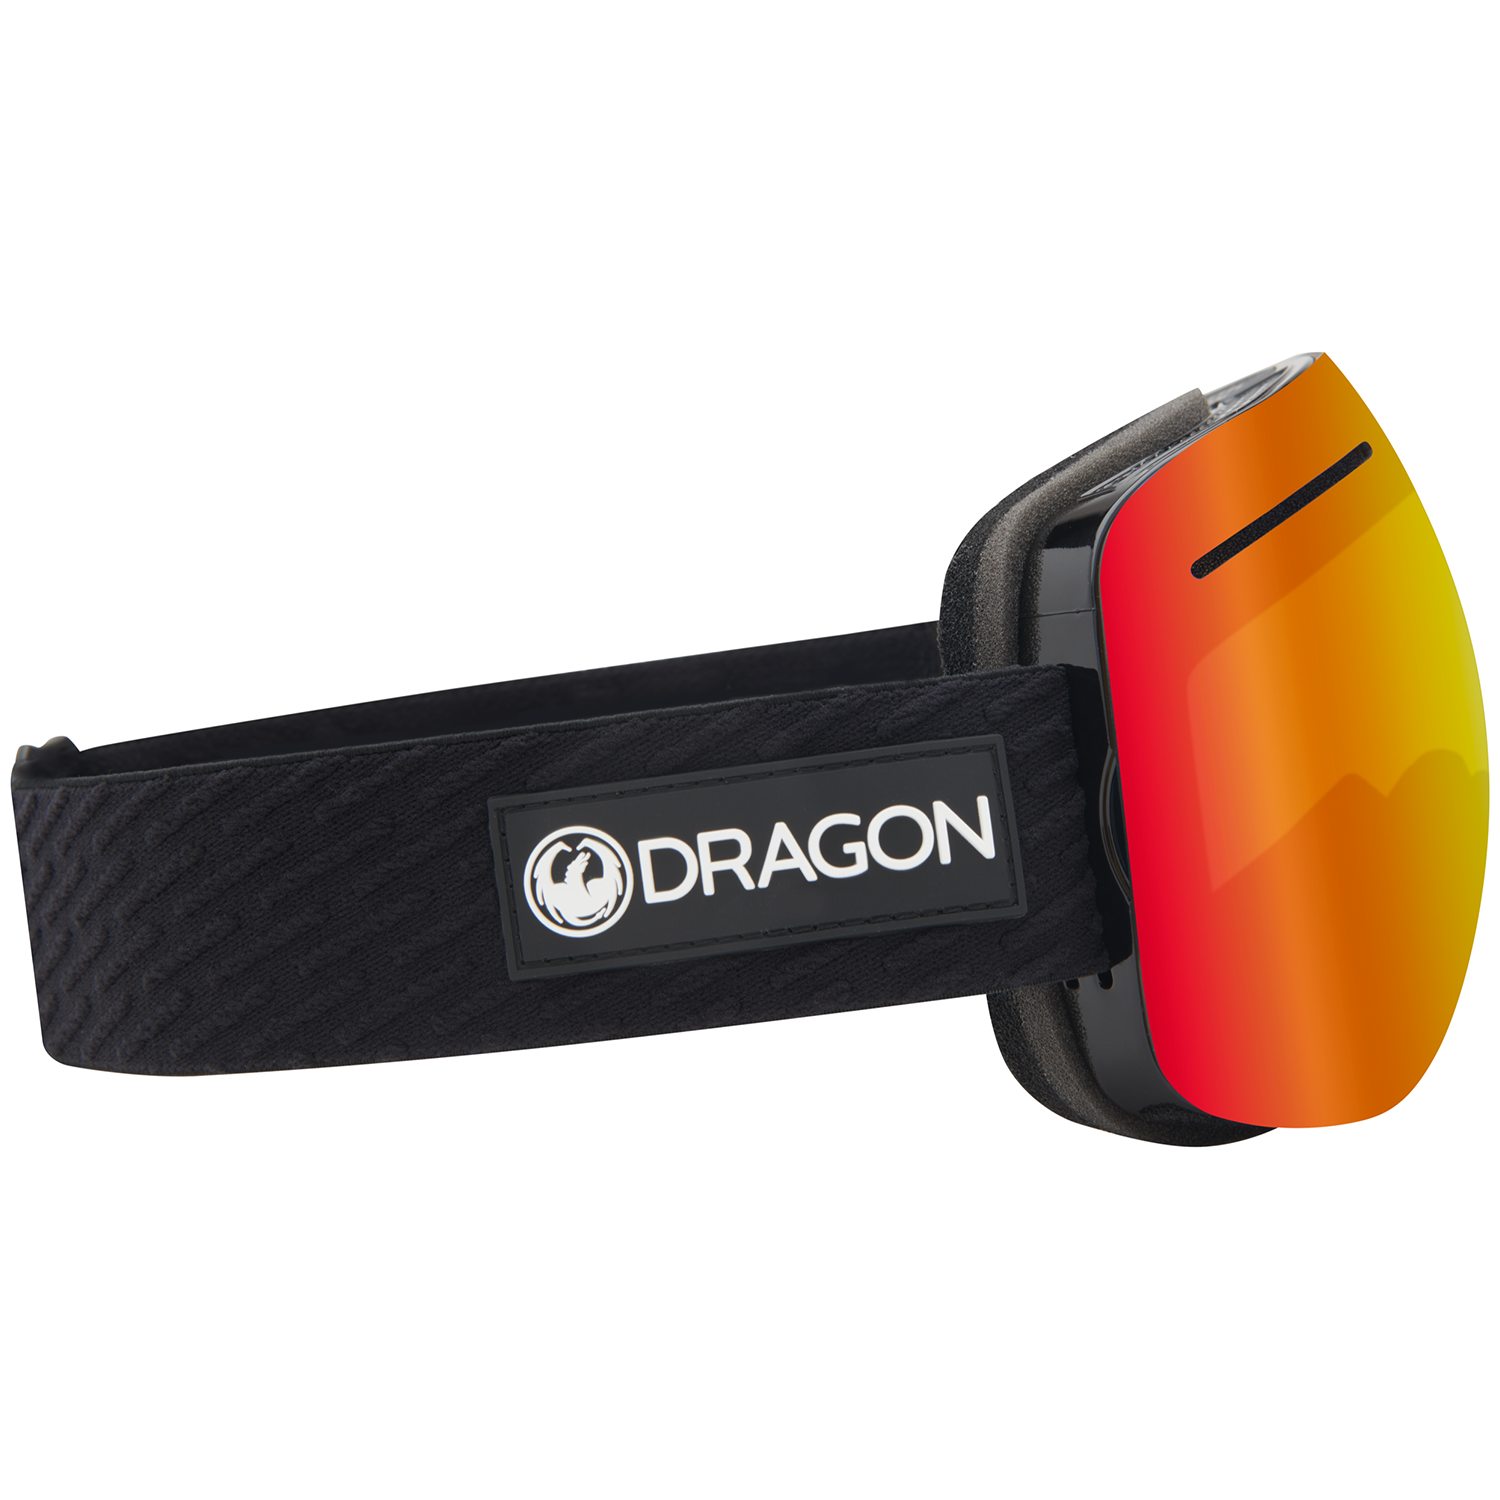 Dragon X1 Goggles